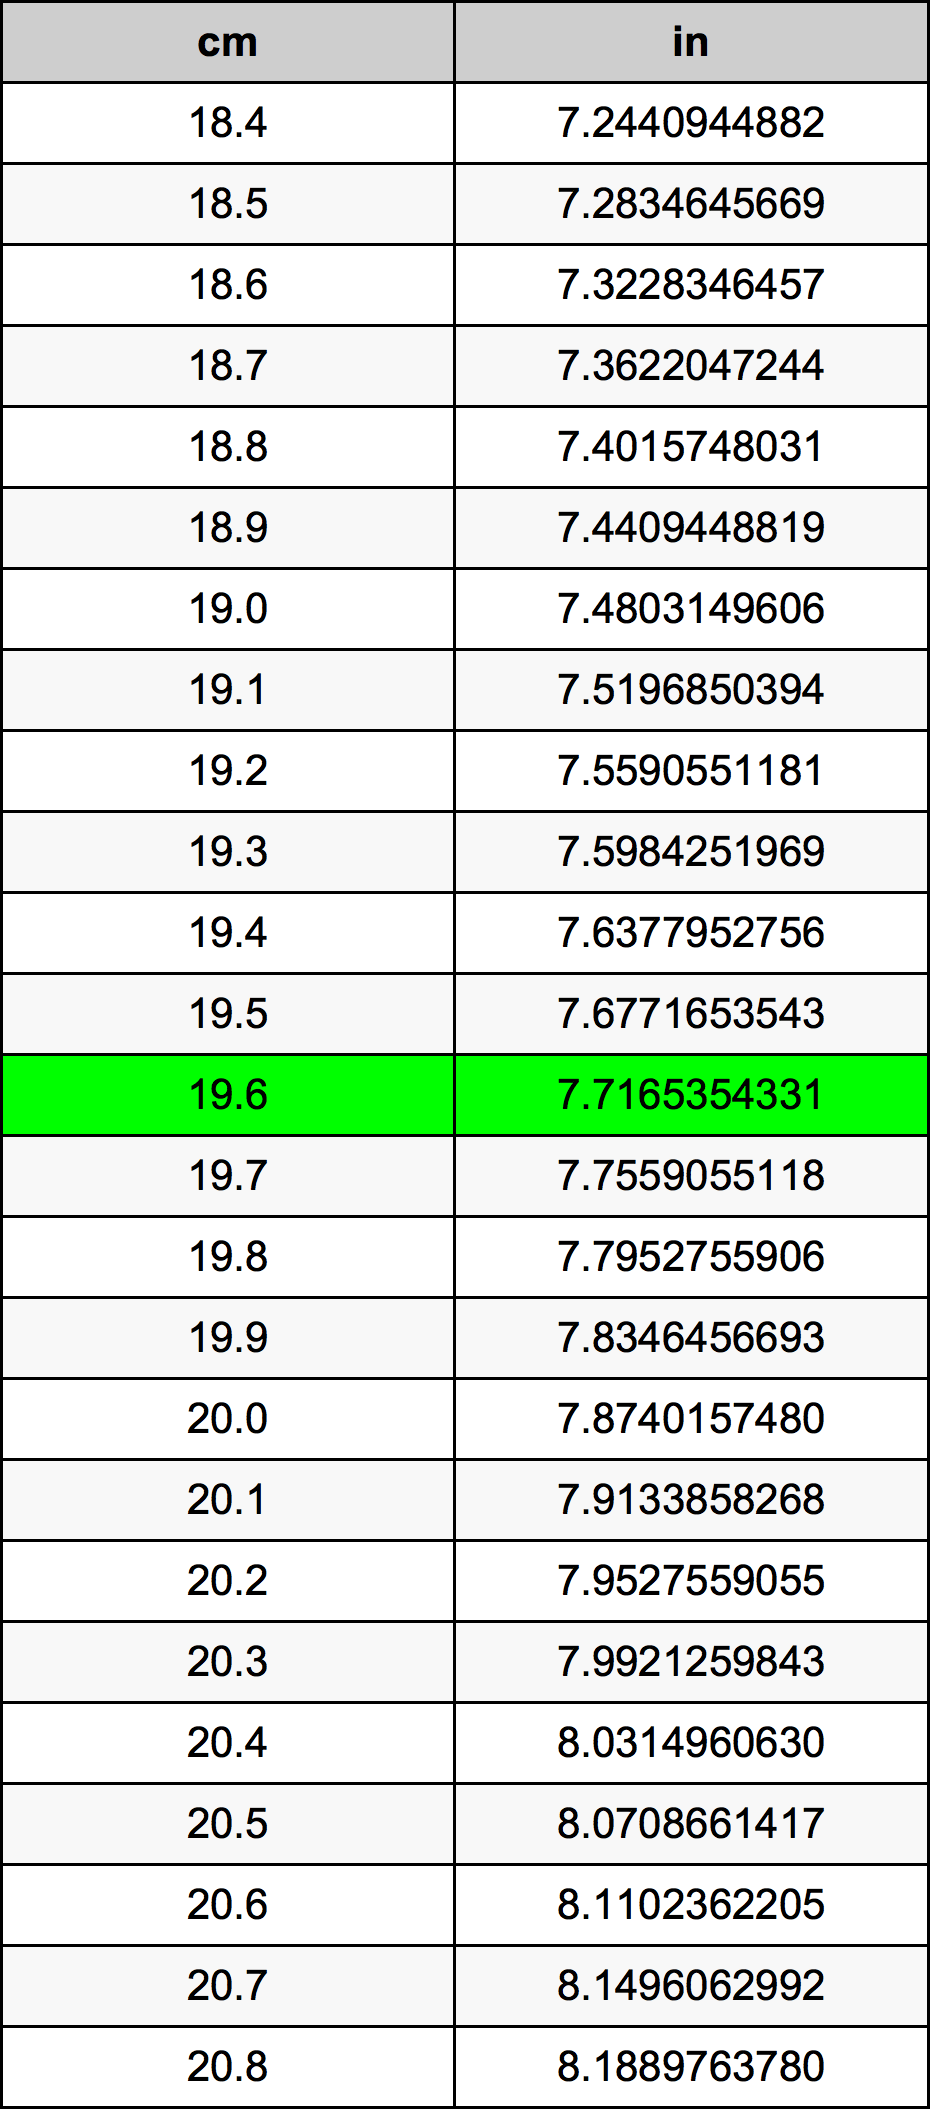 19.6 Centiméter átszámítási táblázat